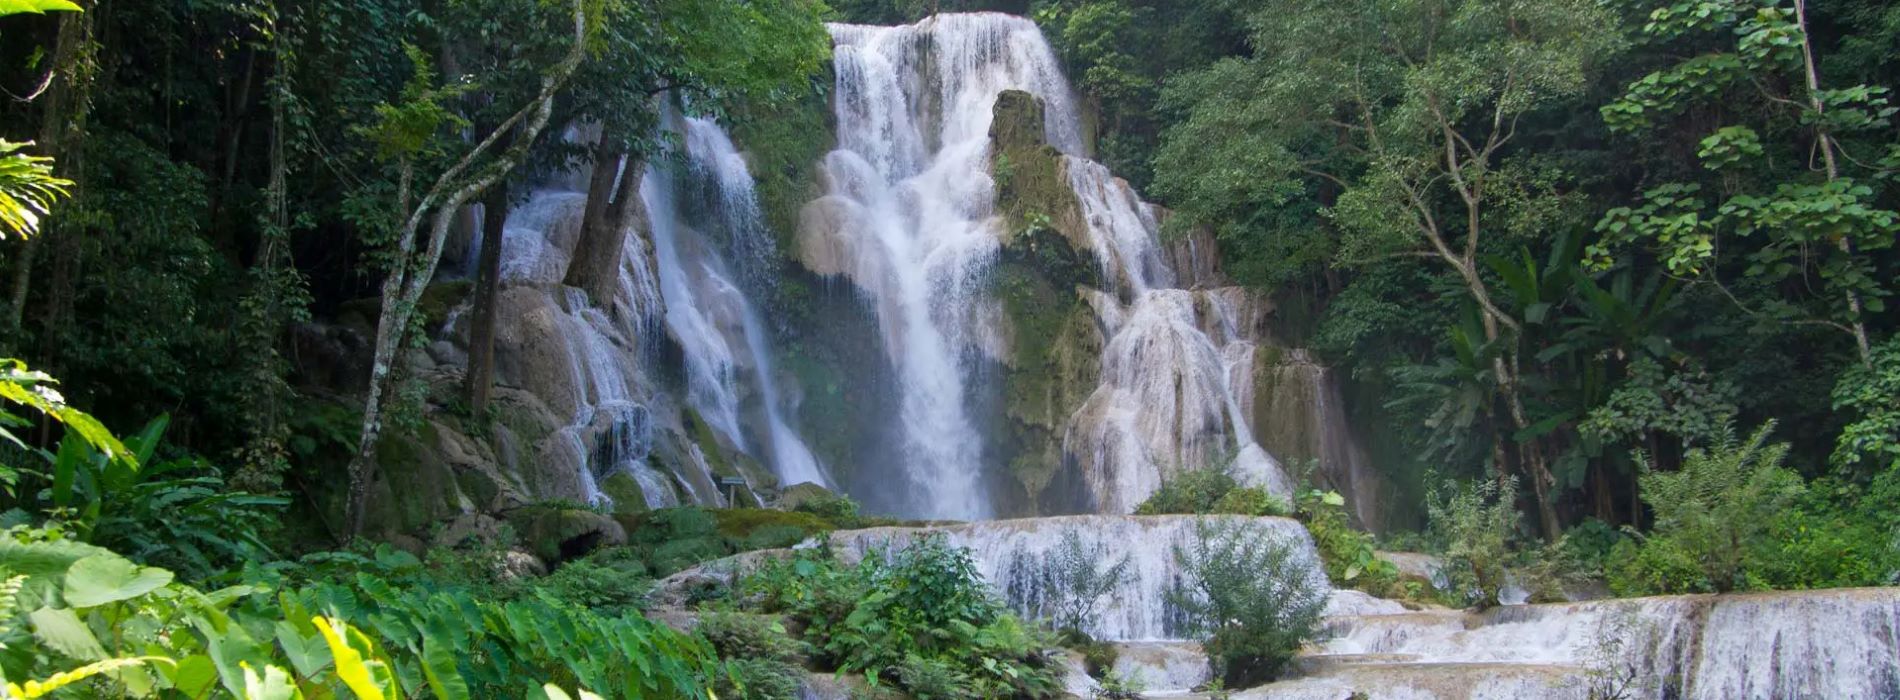 kuangsi waterfall vietnam dmc for indian travel agencies